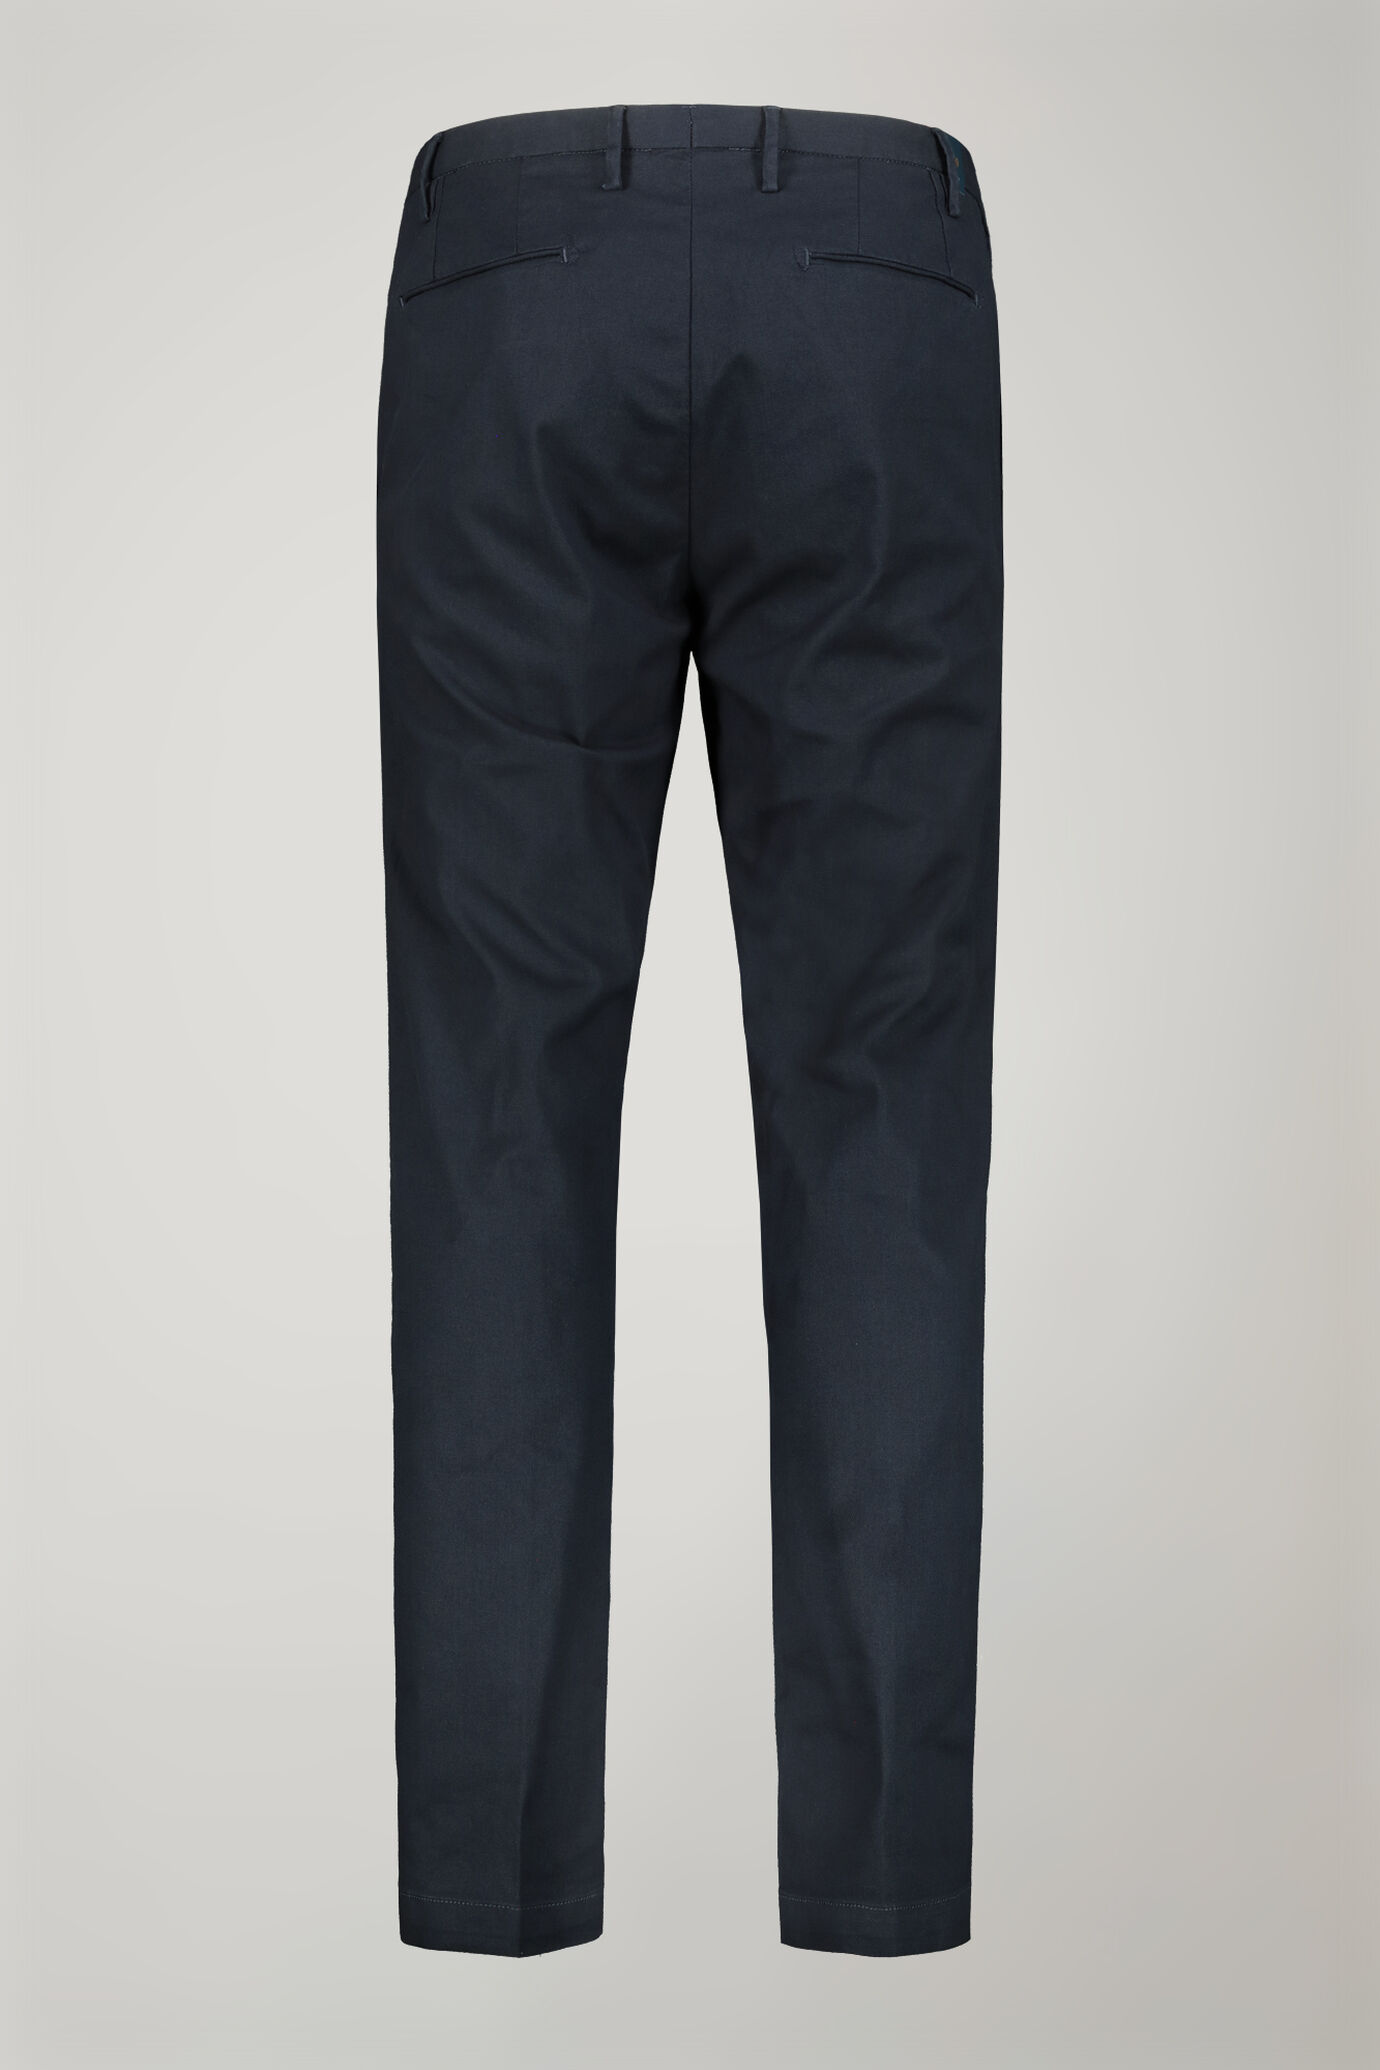 Pantalon homme classique à pinces en tissu armuré coupe confort image number 5